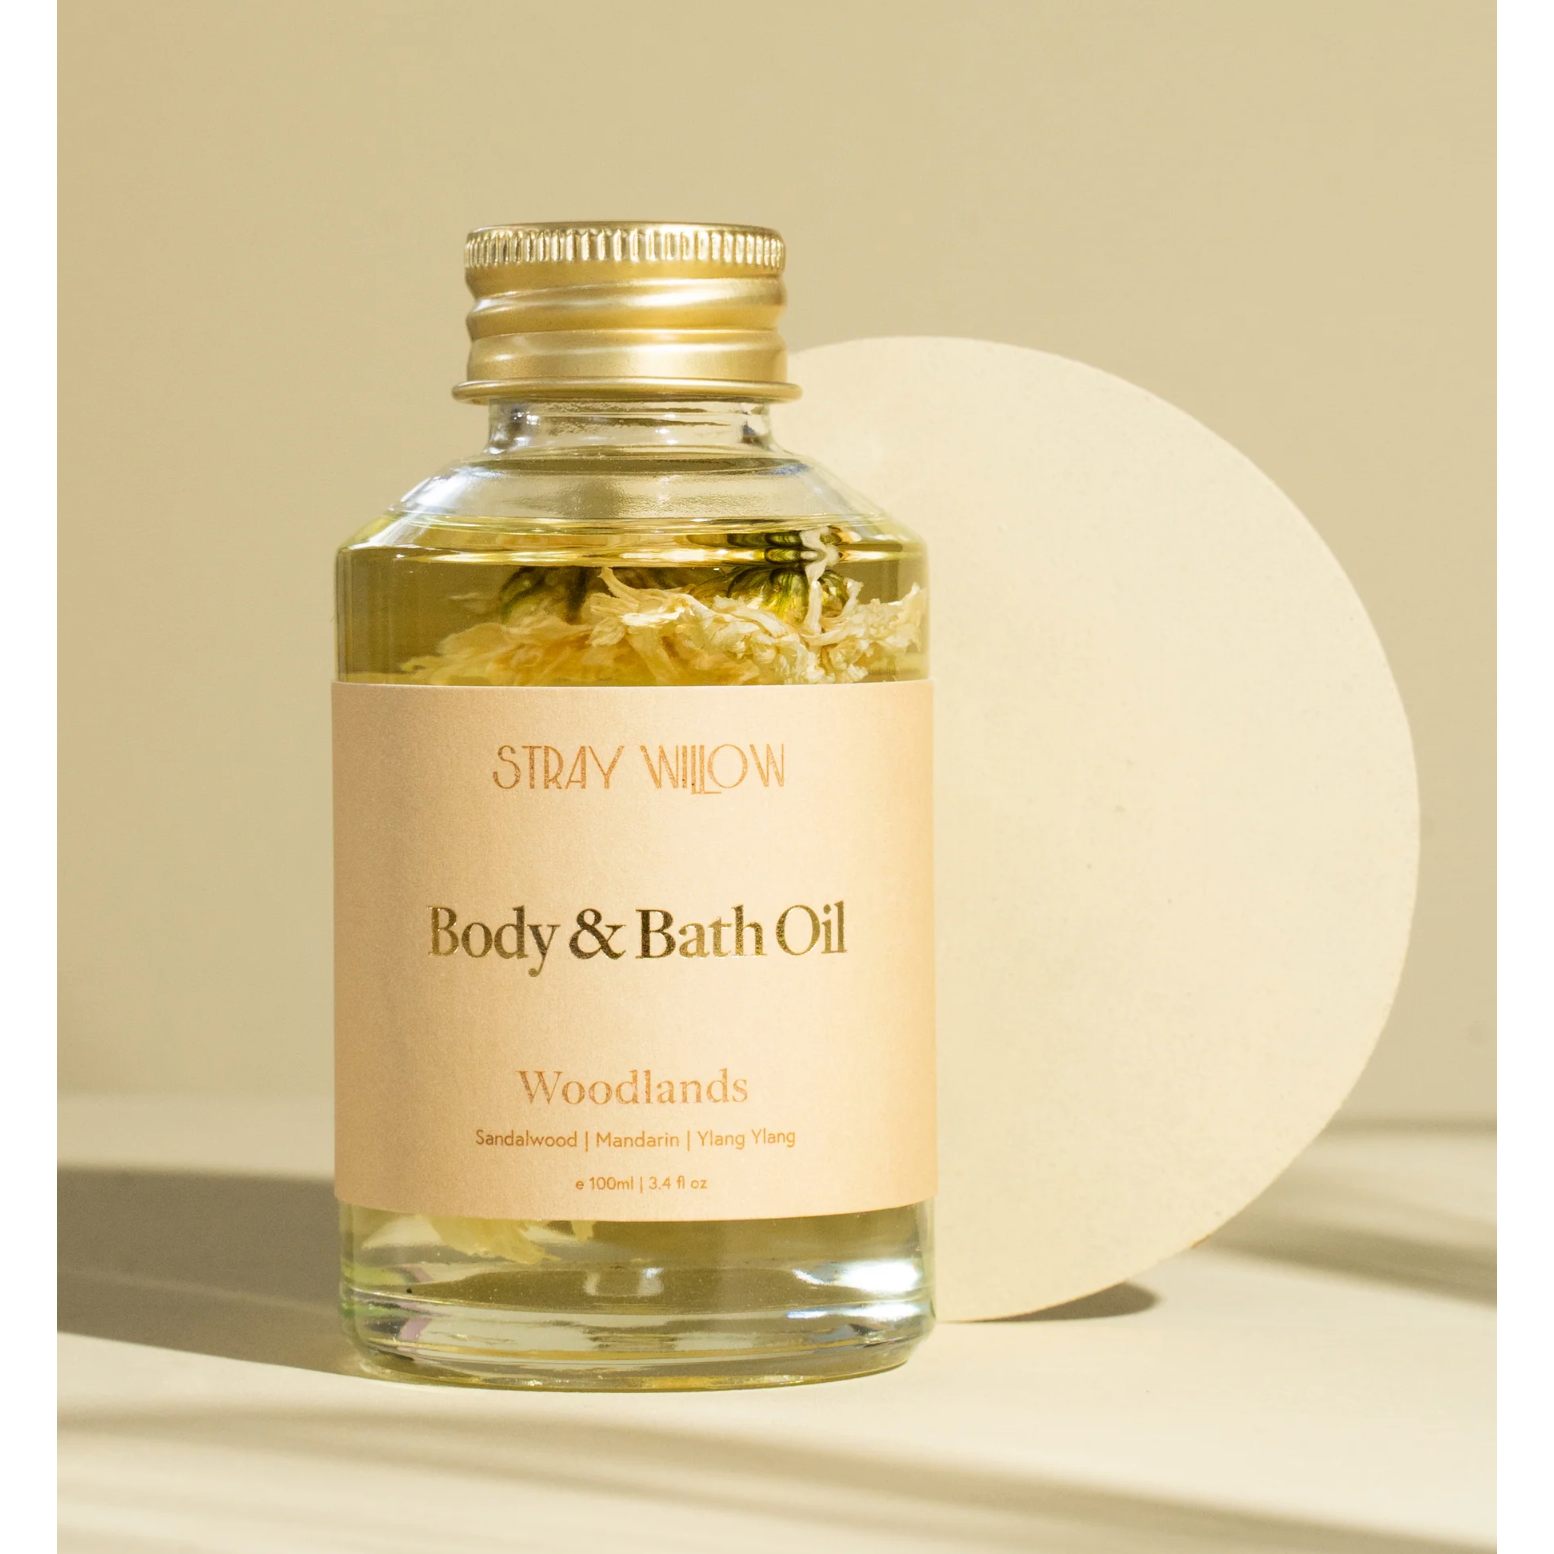 Stray Willow Body & Bath Oil